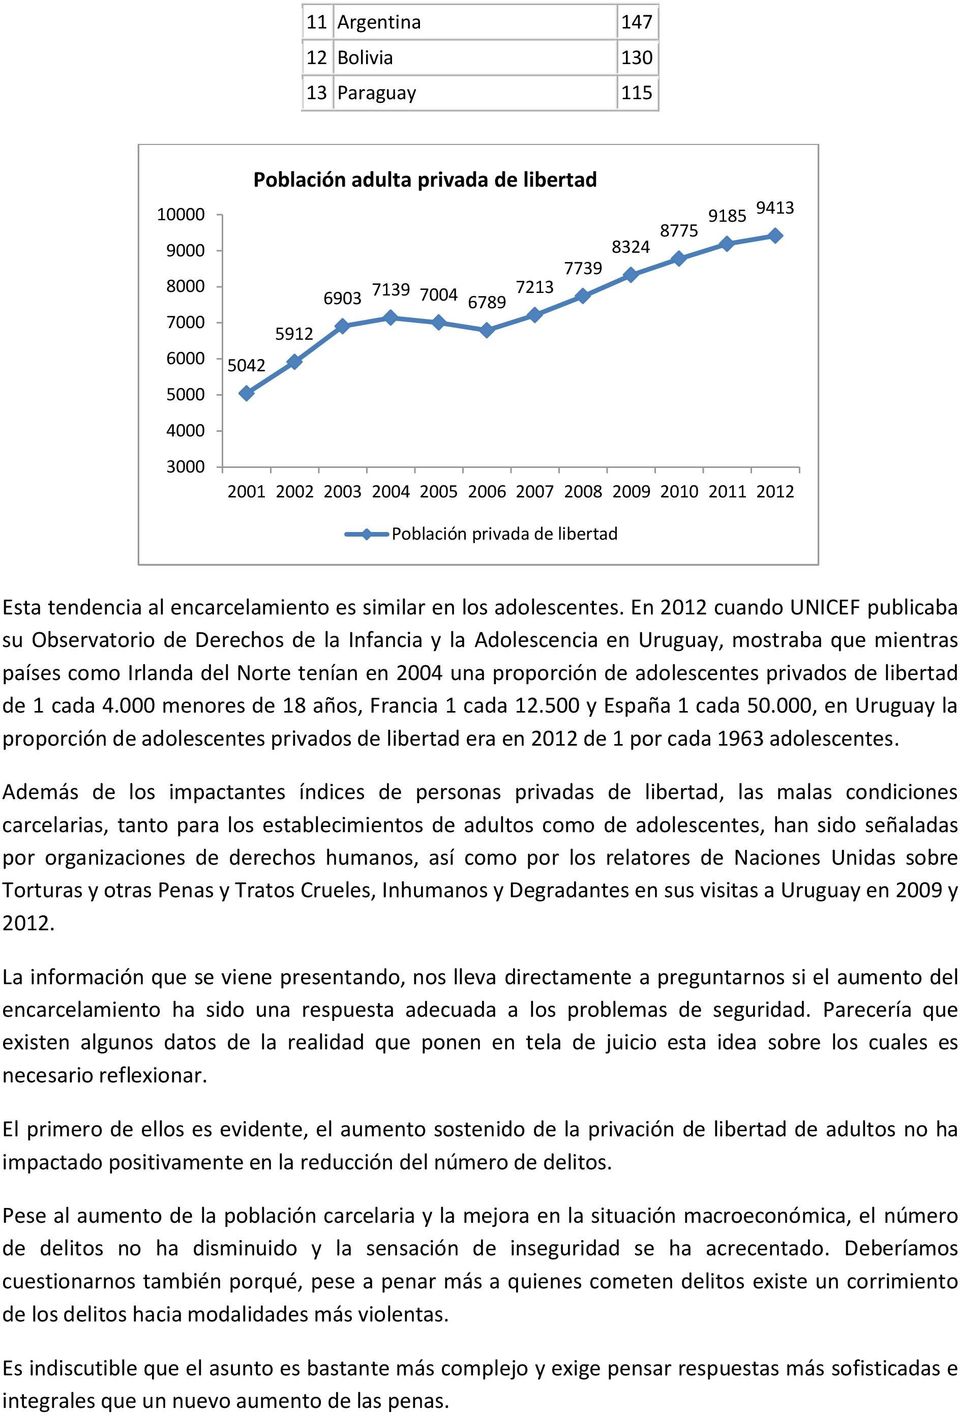 En 2012 cuando UNICEF publicaba su Observatorio de Derechos de la Infancia y la Adolescencia en Uruguay, mostraba que mientras países como Irlanda del Norte tenían en 2004 una proporción de